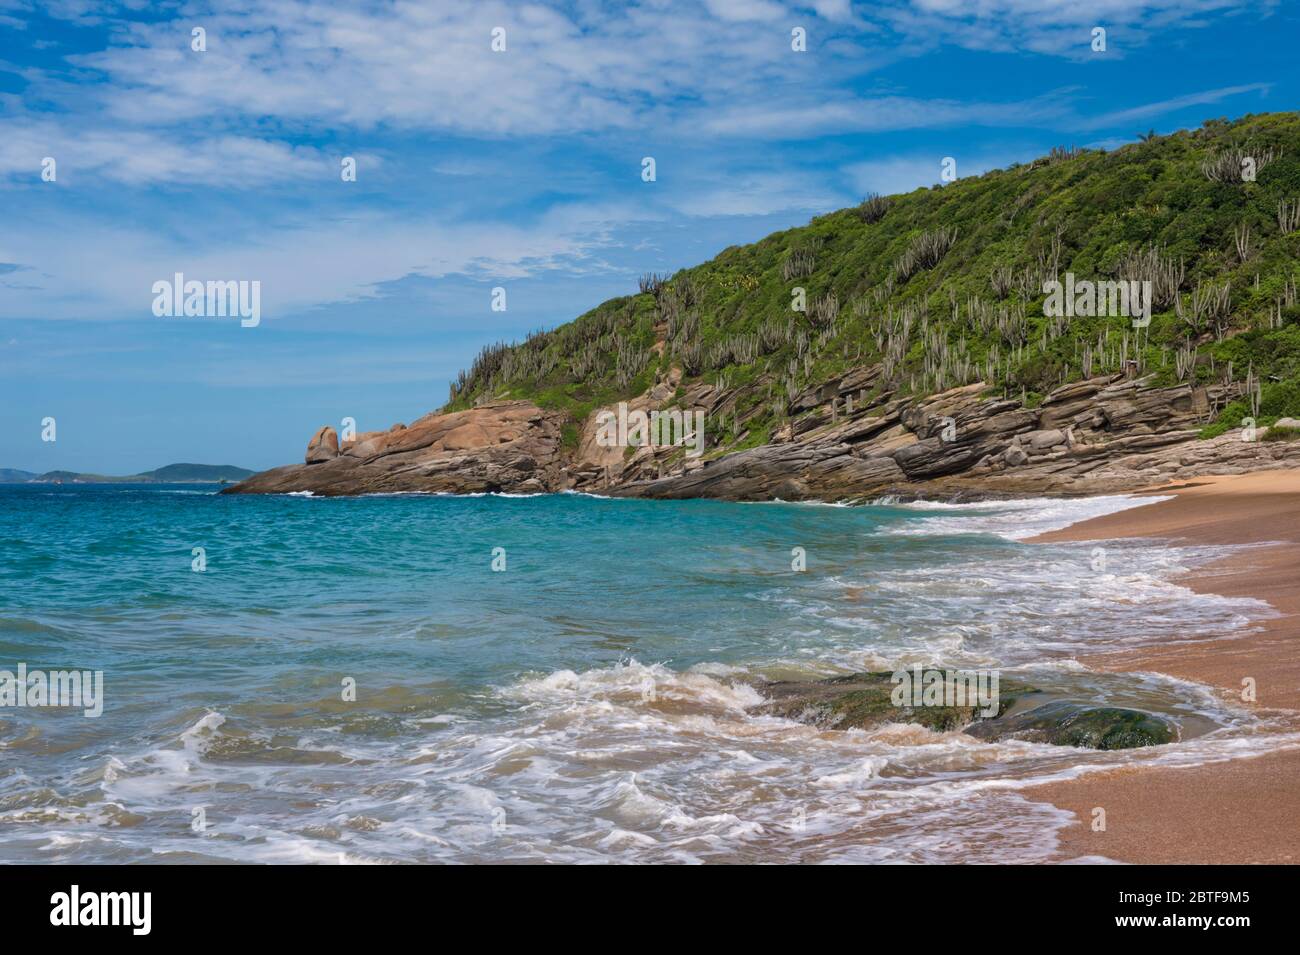 Praia das Caravelas, Rocky beach, Buzios, Rio de Janeiro, Brazil Stock Photo